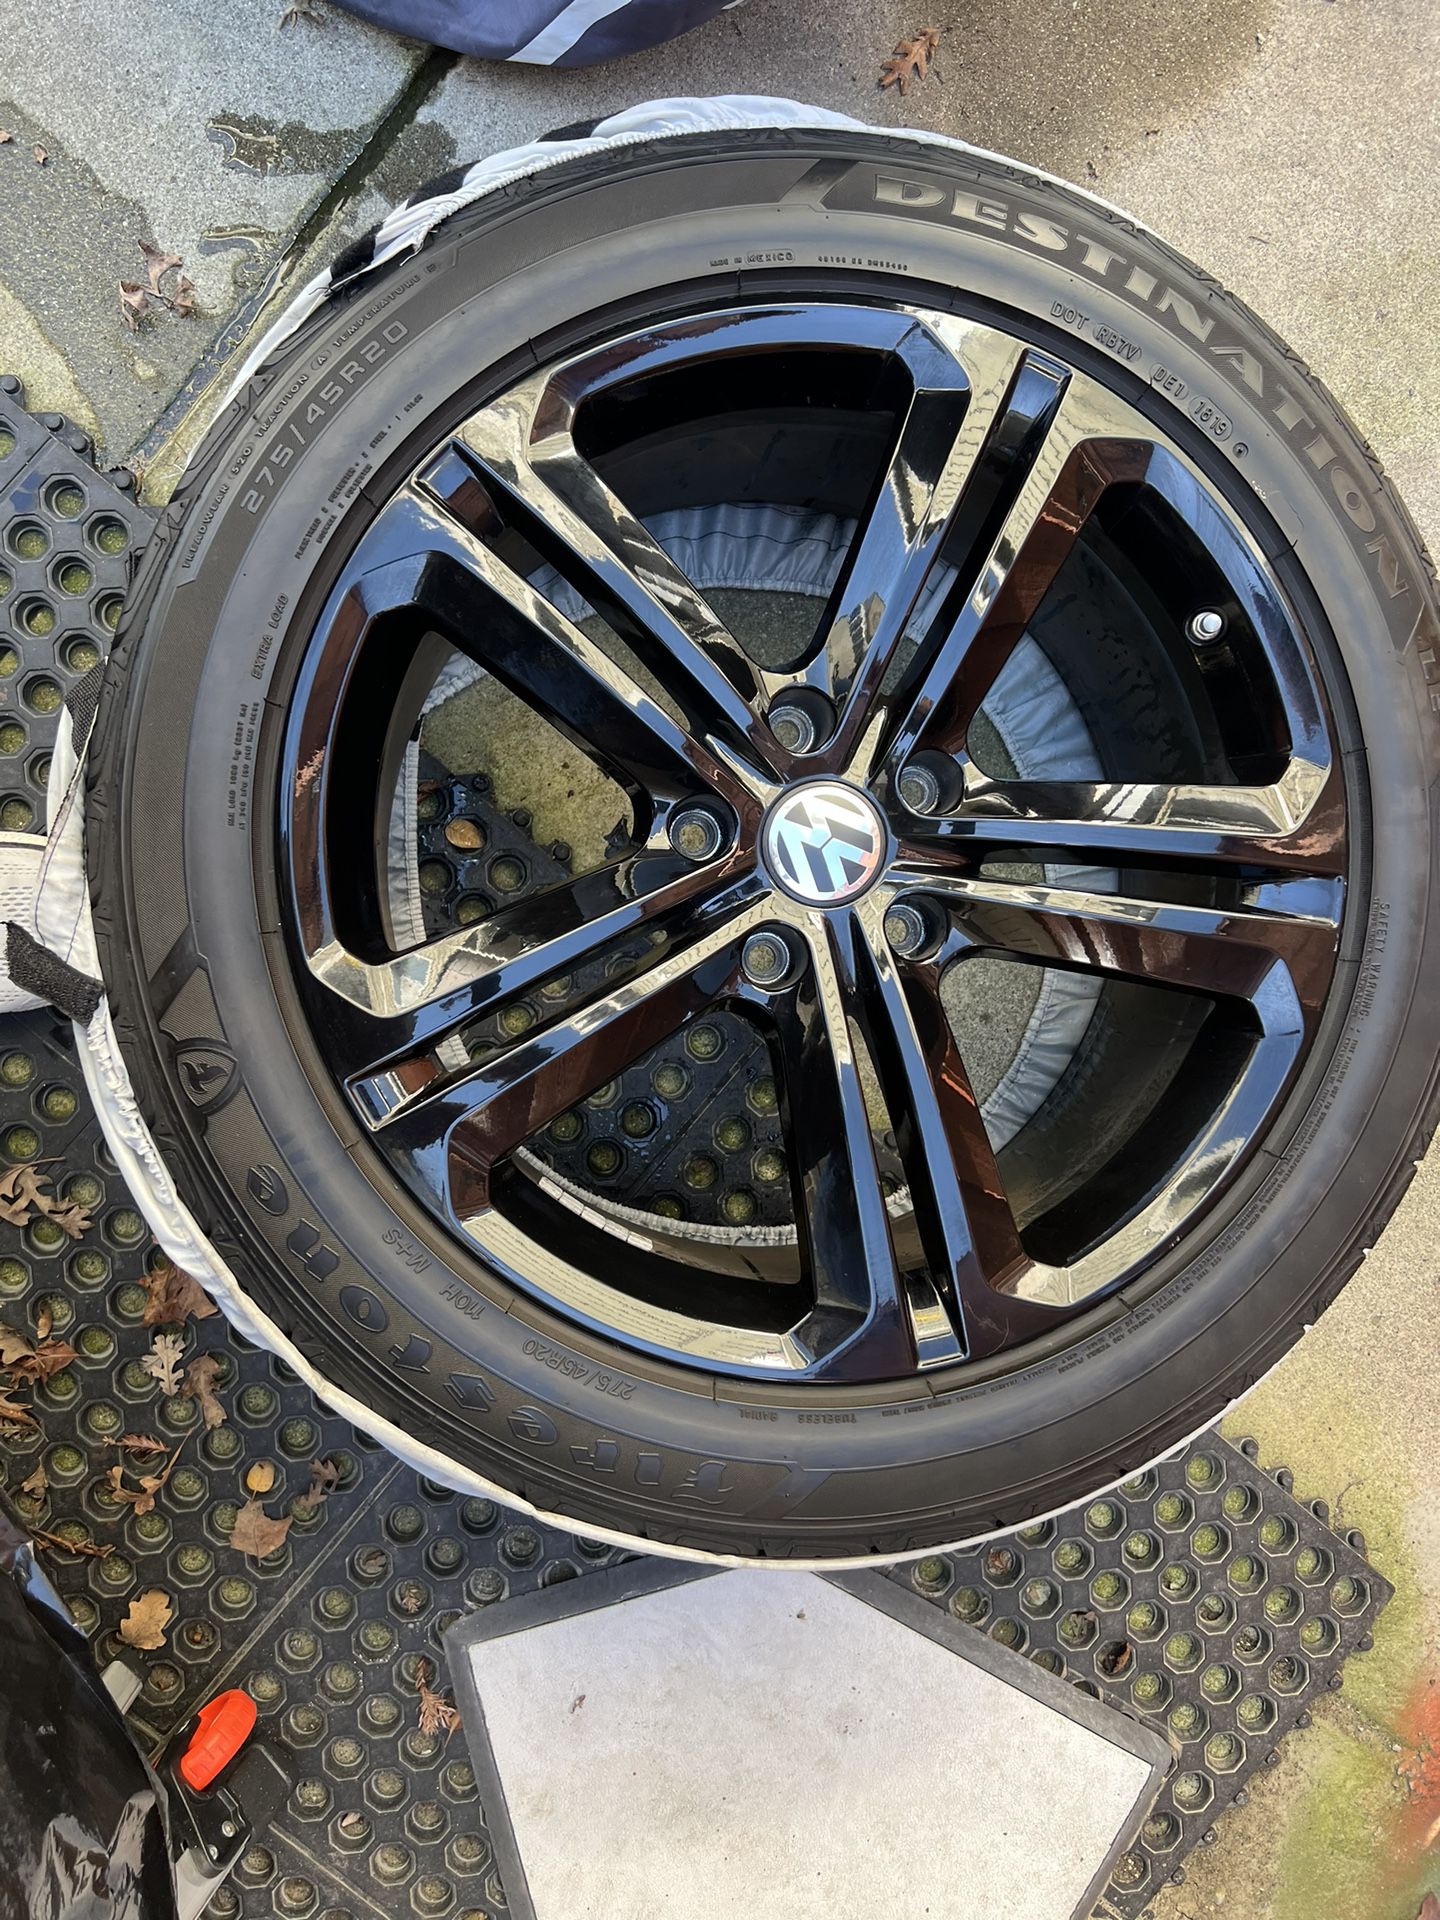 VW Touareg OEM Wheel/tire Set 20x9 ET57 Black